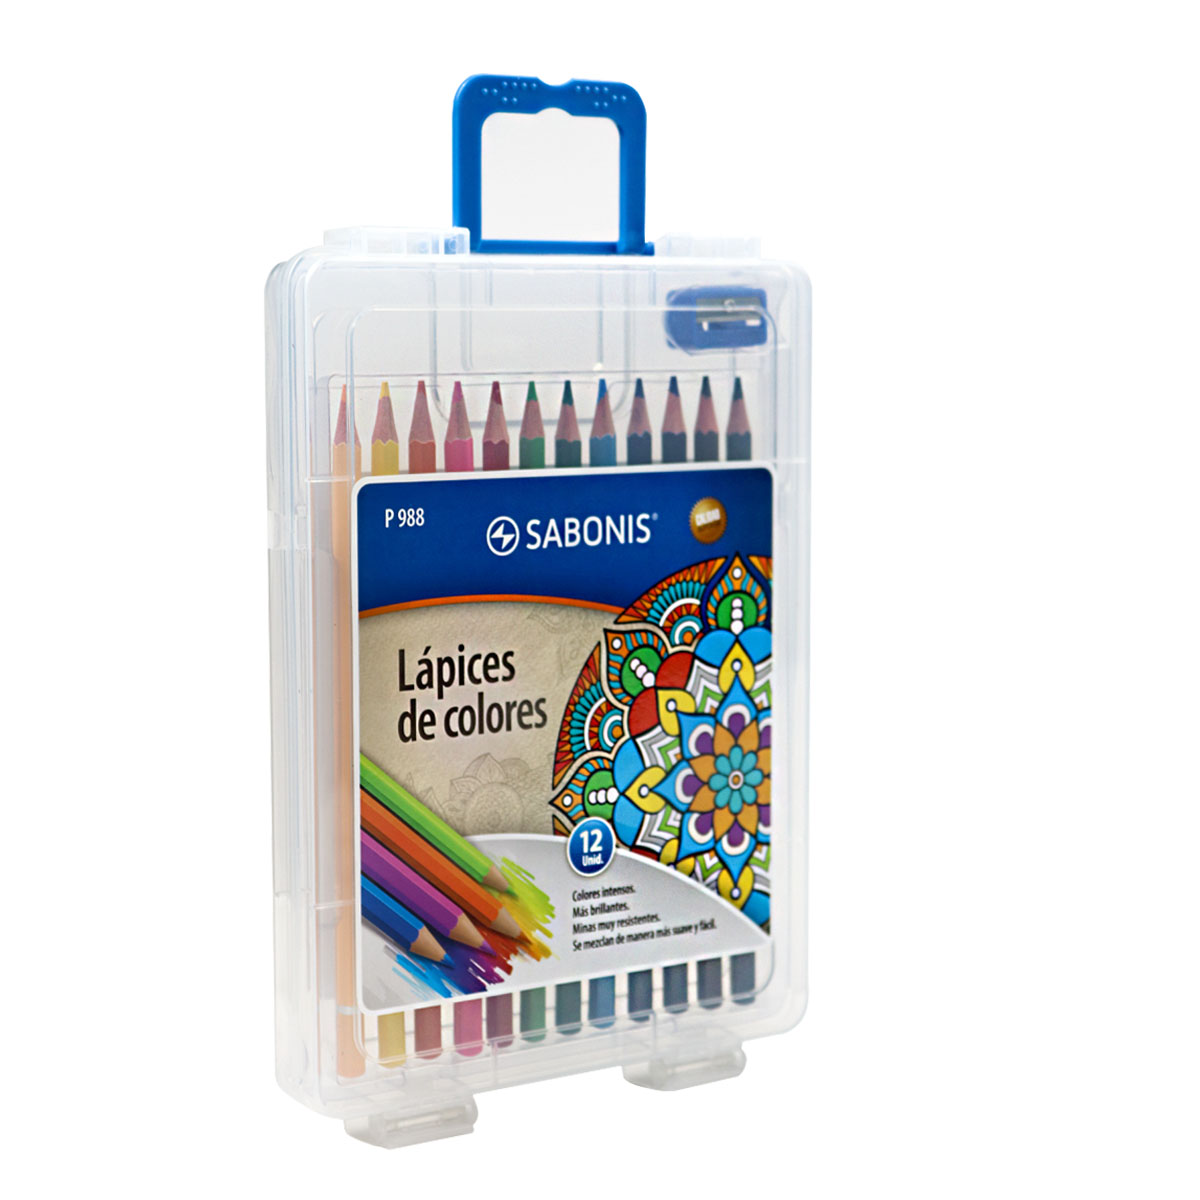 Set de 12 Lápices de Colores en Maletín Rígido + Tajador - P988 - SABONIS